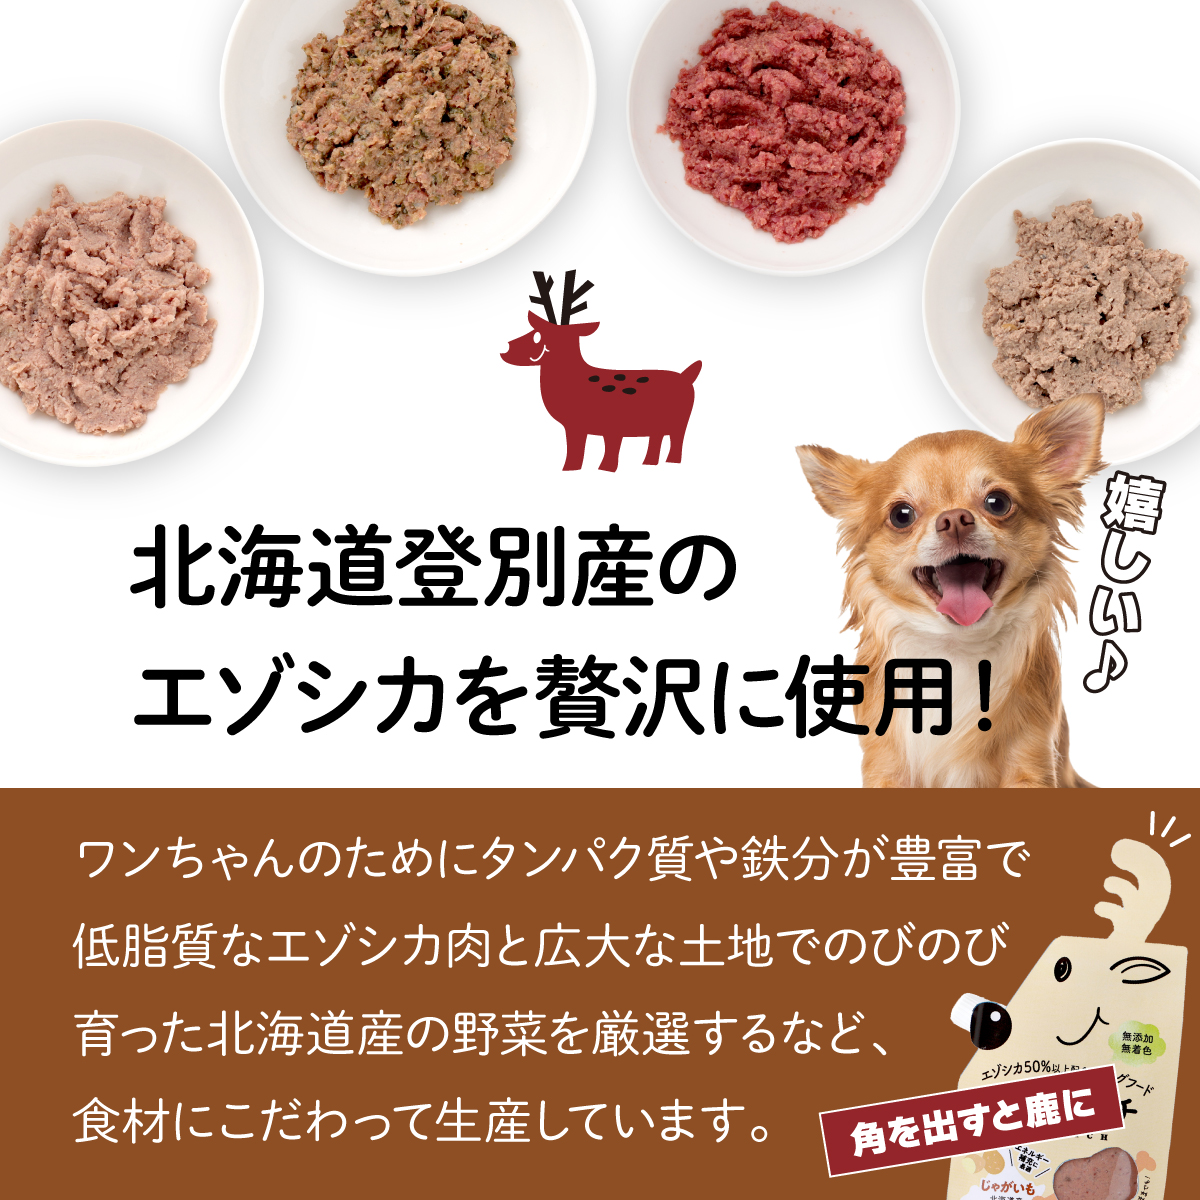 登別産エゾシカ肉のドッグフード【エゾリッチ】4種食べ比べセット